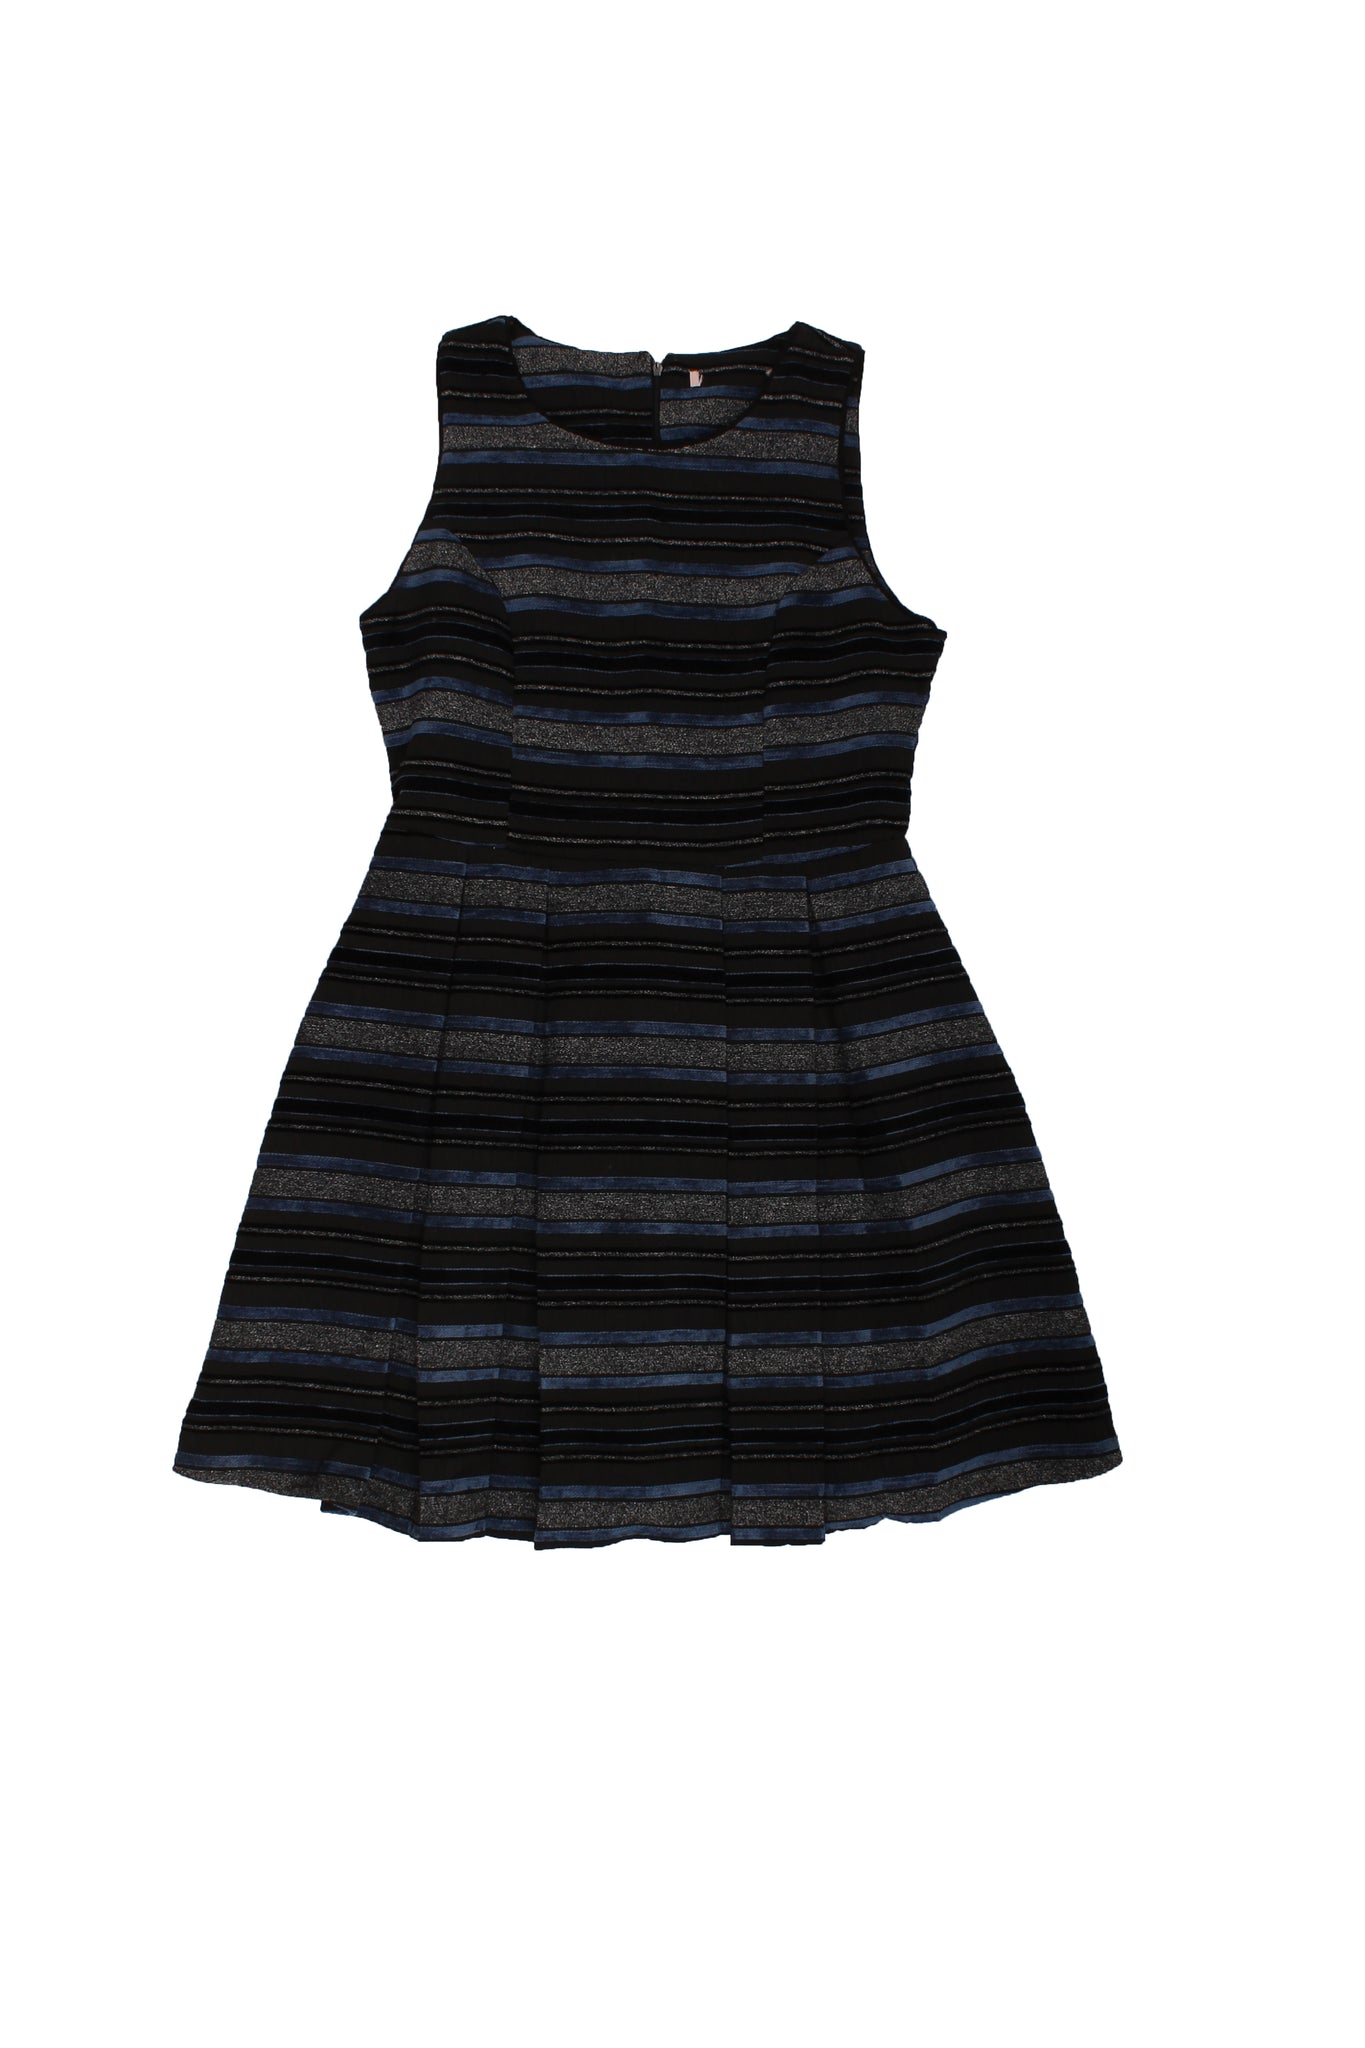 BRANDLESS - Vestido Corte A Tablones Print Negro, Gris Y Azul